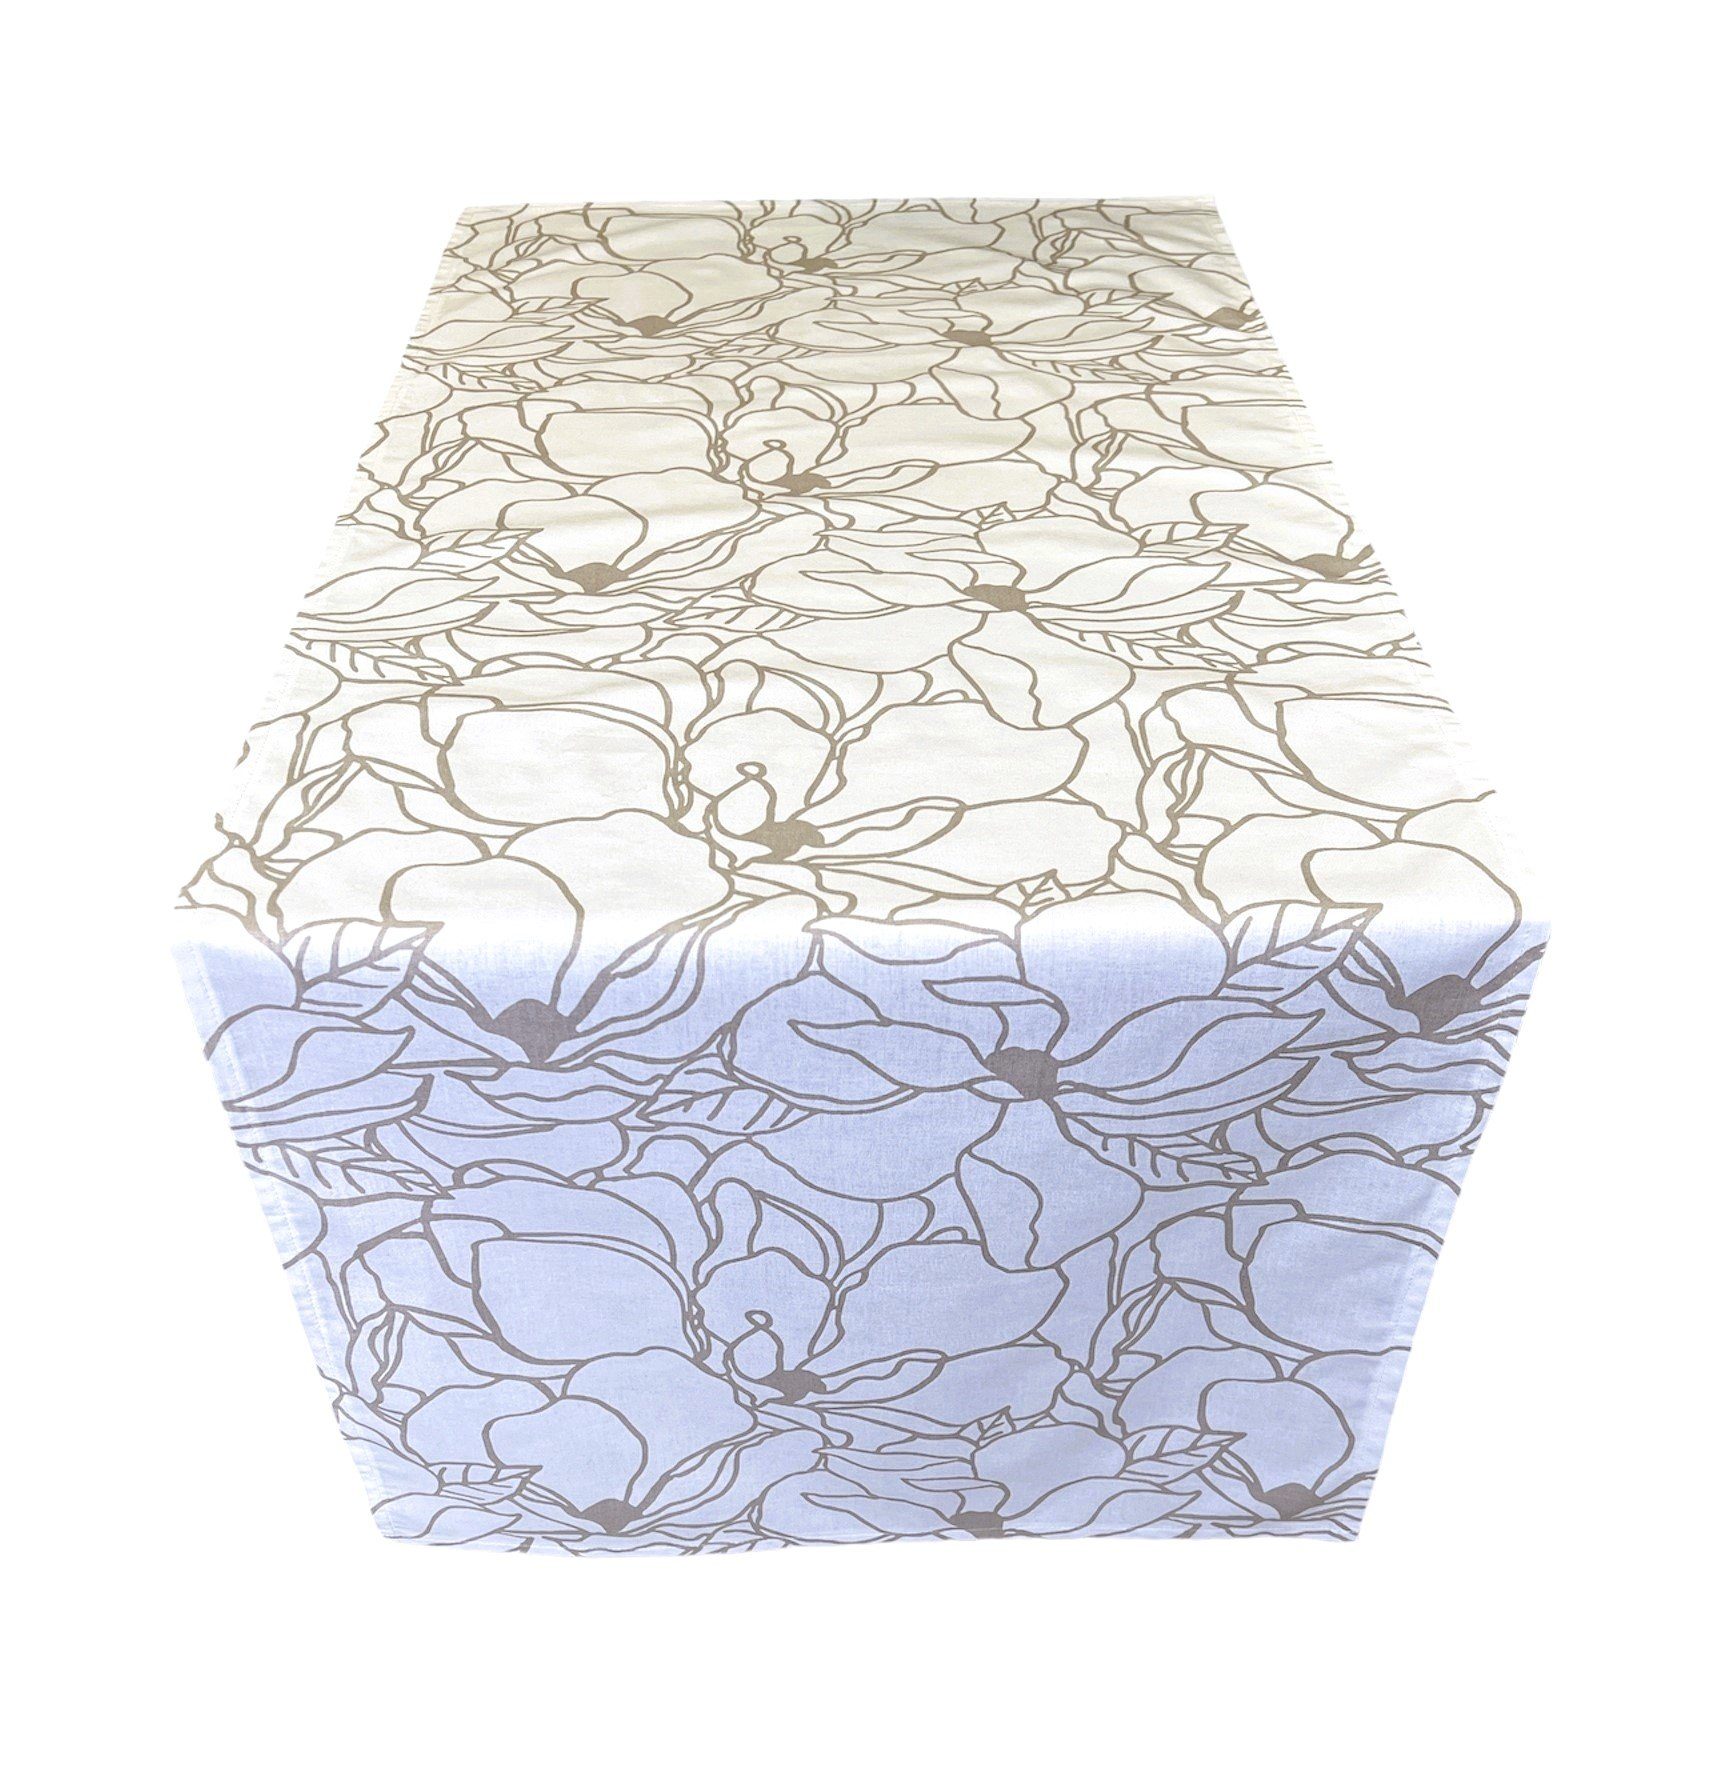 RoKo-Textilien Tischläufer Tischläufer Tischdecke 100% Baumwolle gedeckter Tisch in 18 Maßen, bedruckt, geblümt